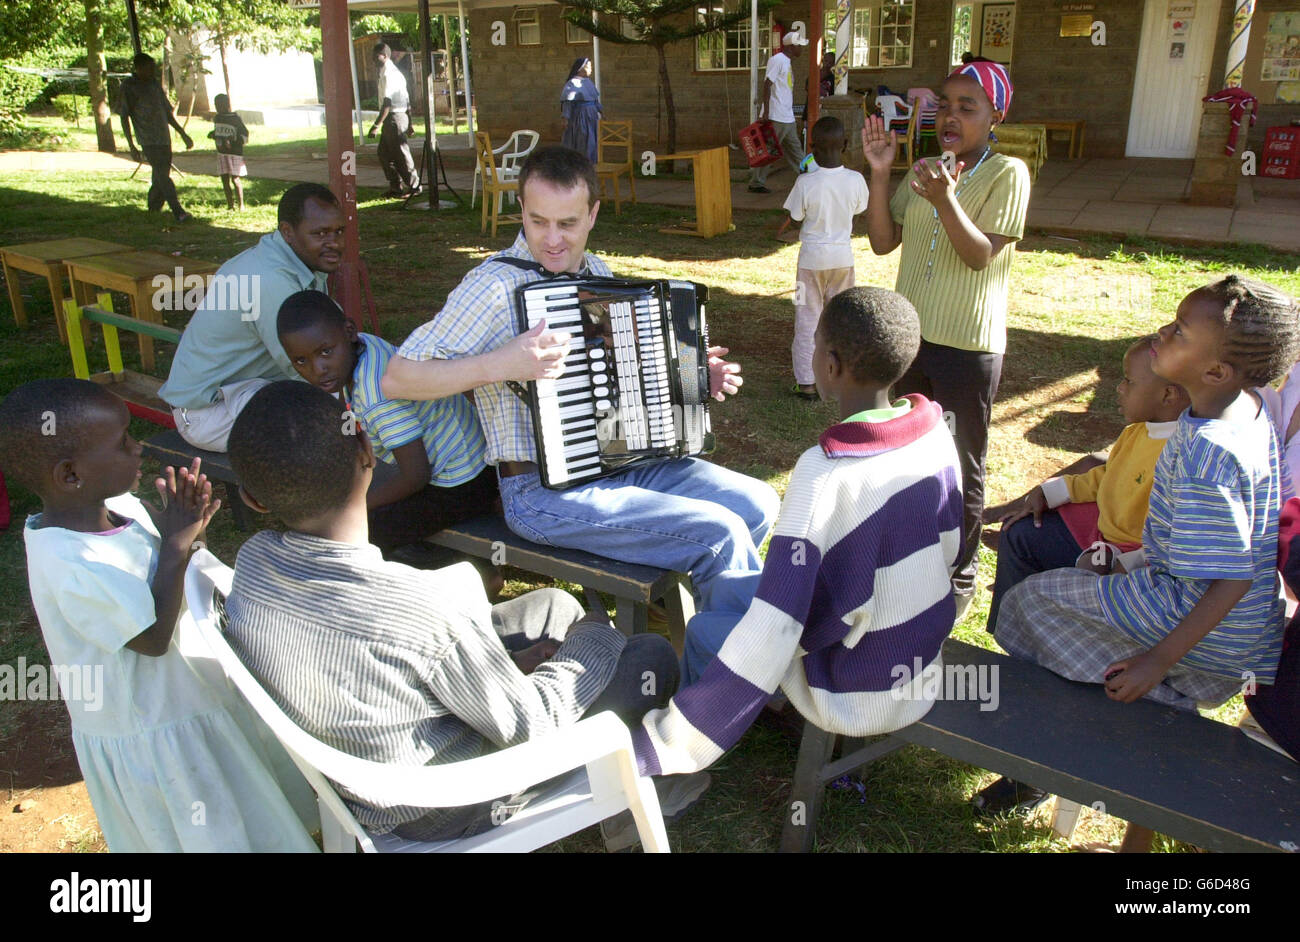 Pilot Simon Wood aus Barnett, London, wechselt seine Fluginstrumente in ein musikalisches, während er während einer Osterparty in einem Waisenhaus in Nairobi, Kenia, ein HIV-positives Waisenkind unterhält. Simon, der als Senior First Officer bei British Airways arbeitet, war einer von 20 Mitarbeitern der Fluggesellschaft, die im Nyumbani-Waisenhaus eine Osterparty für 79 Kleinkinder veranstalteten. Das in Nairobi ansässige Waisenhaus kümmert sich nur um HIV-positive Waisen, die entweder ihre Eltern an AIDS verloren haben oder allein zur Selbsthilfe und Bekämpfung der Krankheit verlassen wurden. Stockfoto